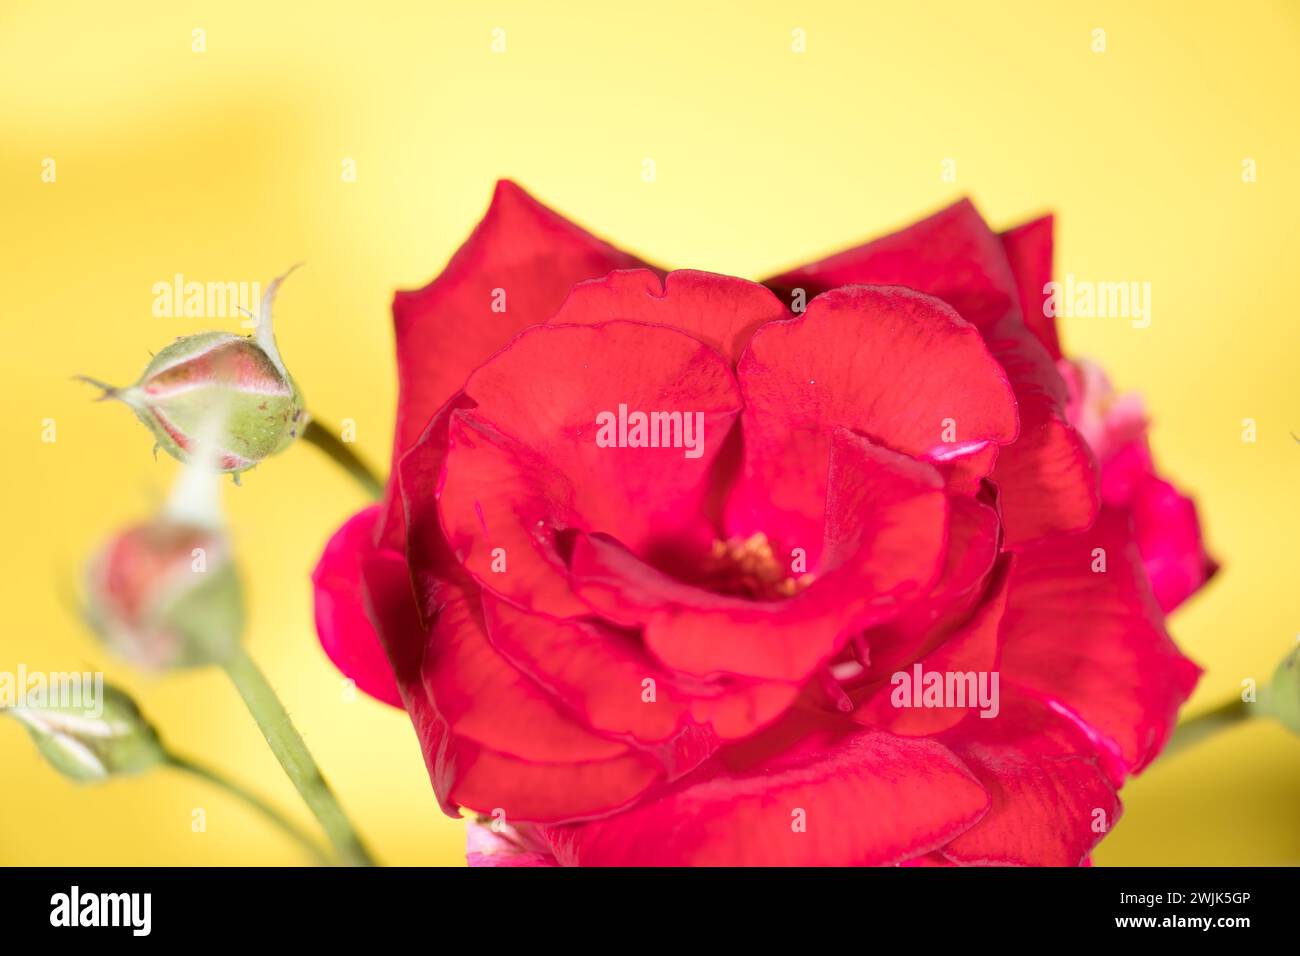 Eine leuchtend rote Rose blüht und fängt die Schönheit der Natur ein. Die Blüten, reich und samtig, entfalten sich vor einem Hintergrund aus goldgelbem Kreatin Stockfoto